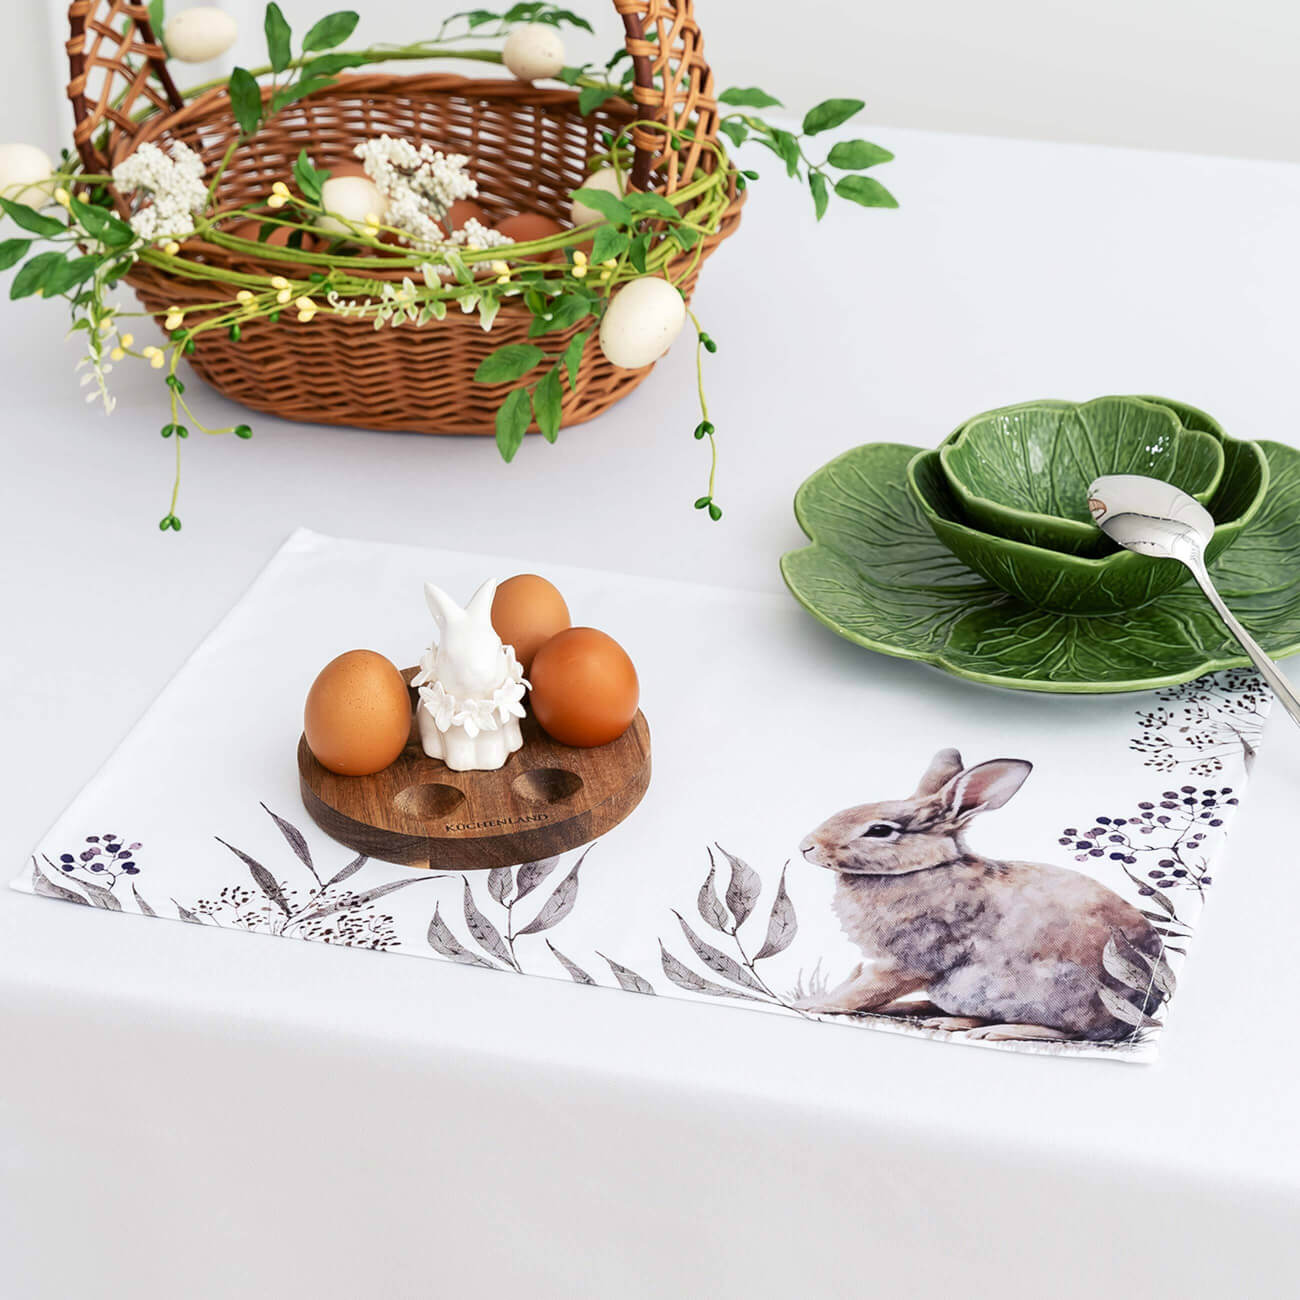 Салфетка под приборы, 30x45 см, полиэстер, белая, Кролик в листве, Natural Easter салфетка laima